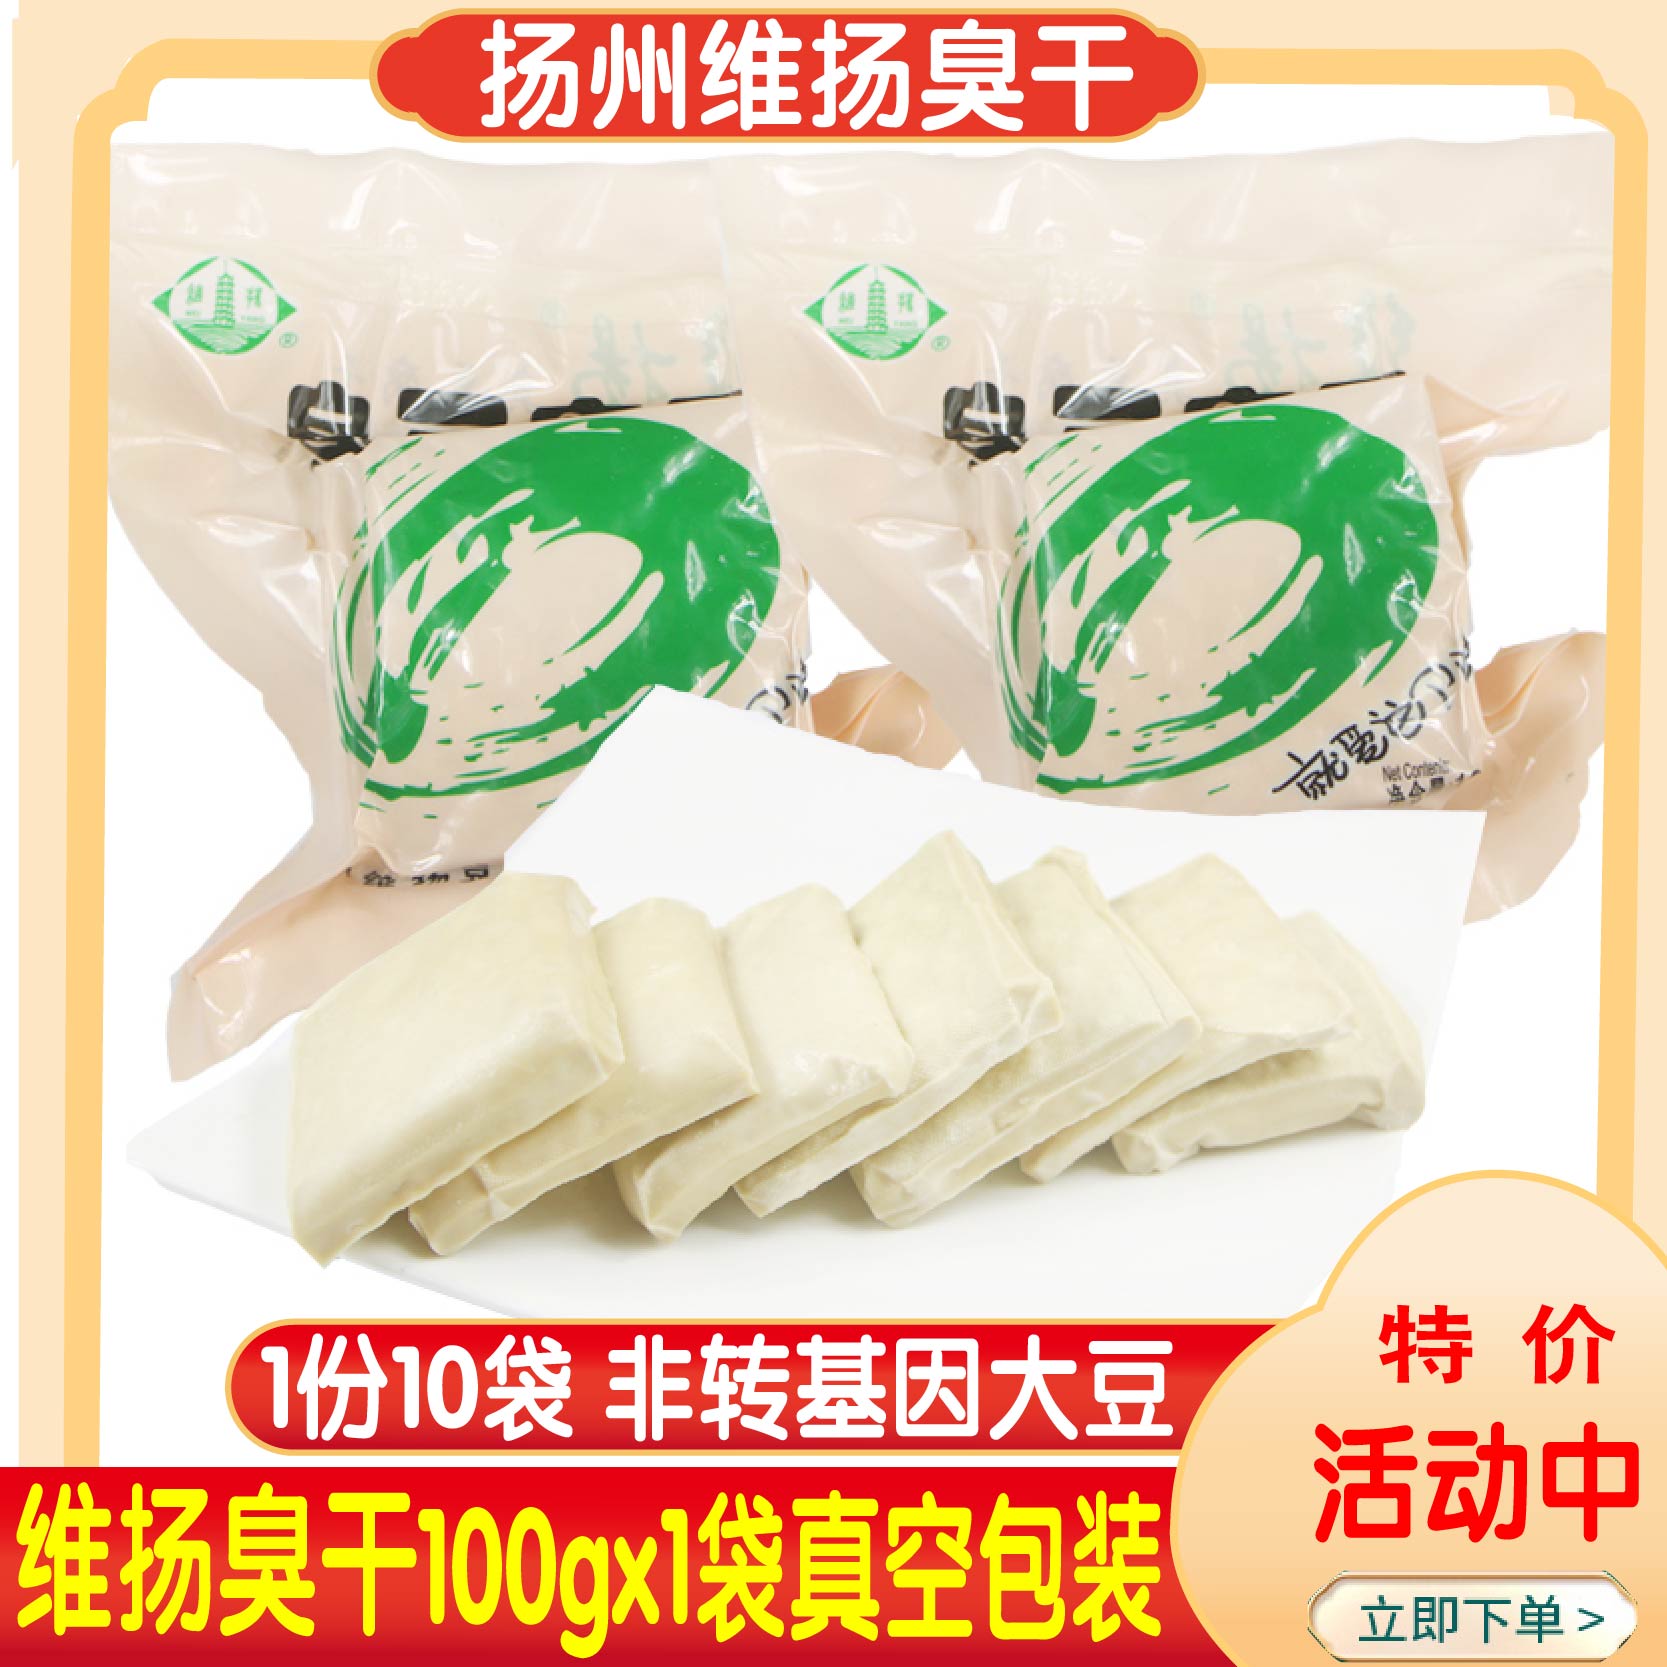 扬州特产维扬豆食臭豆腐干烧烤油炸臭干白臭干子真空包装含6袋